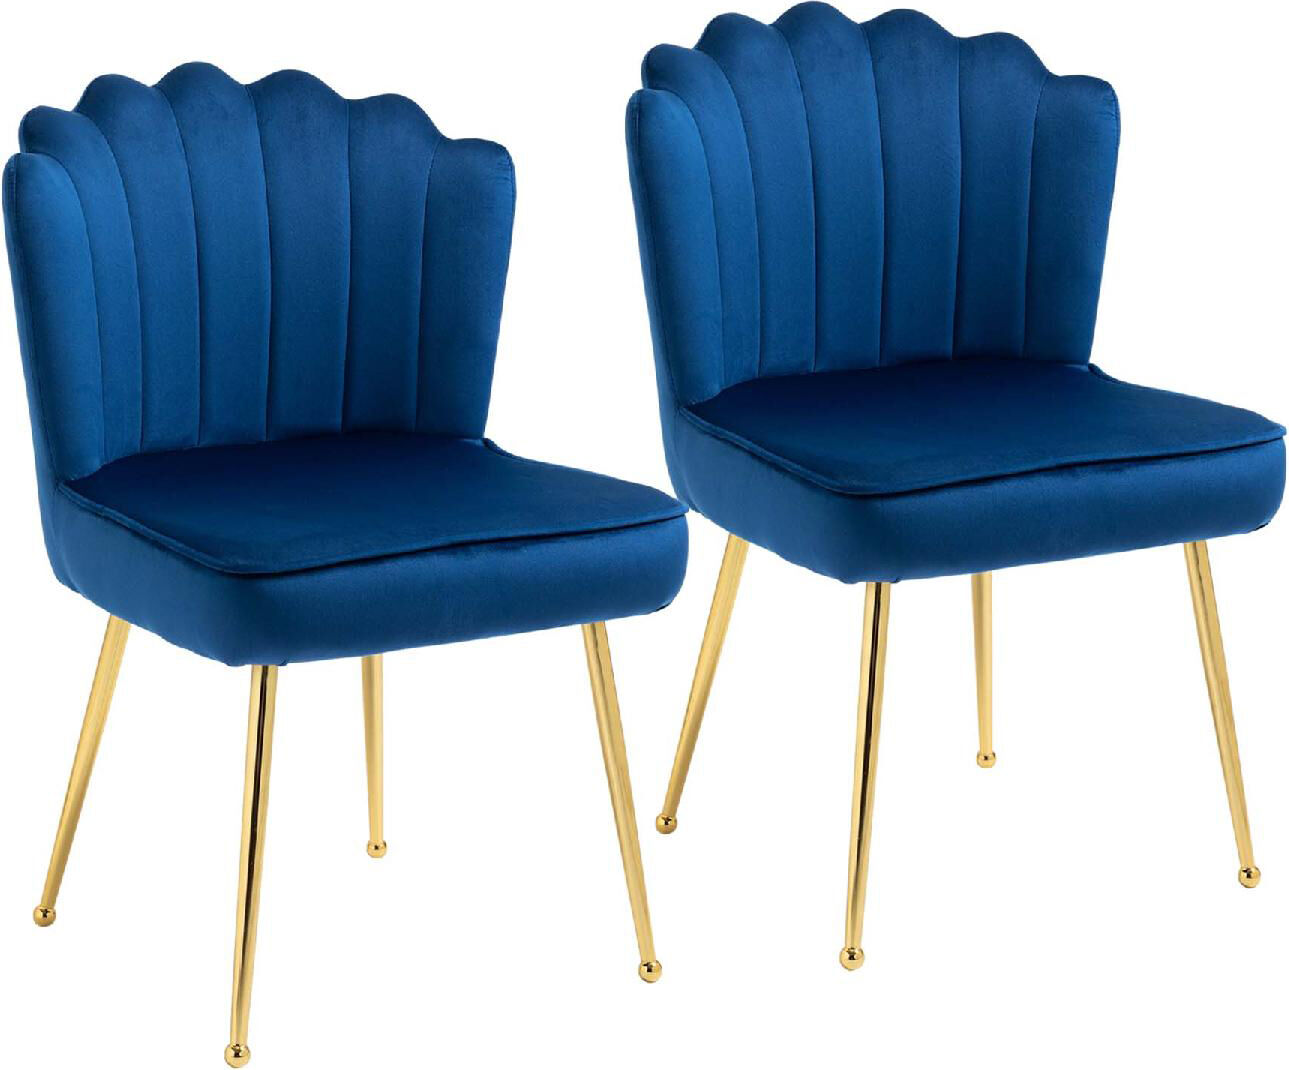 dechome 168db set 2 sedie moderne e imbottite per salotto o soggiorno con rivestimento effetto velluto 57x58x88 cm colore blu - 168db